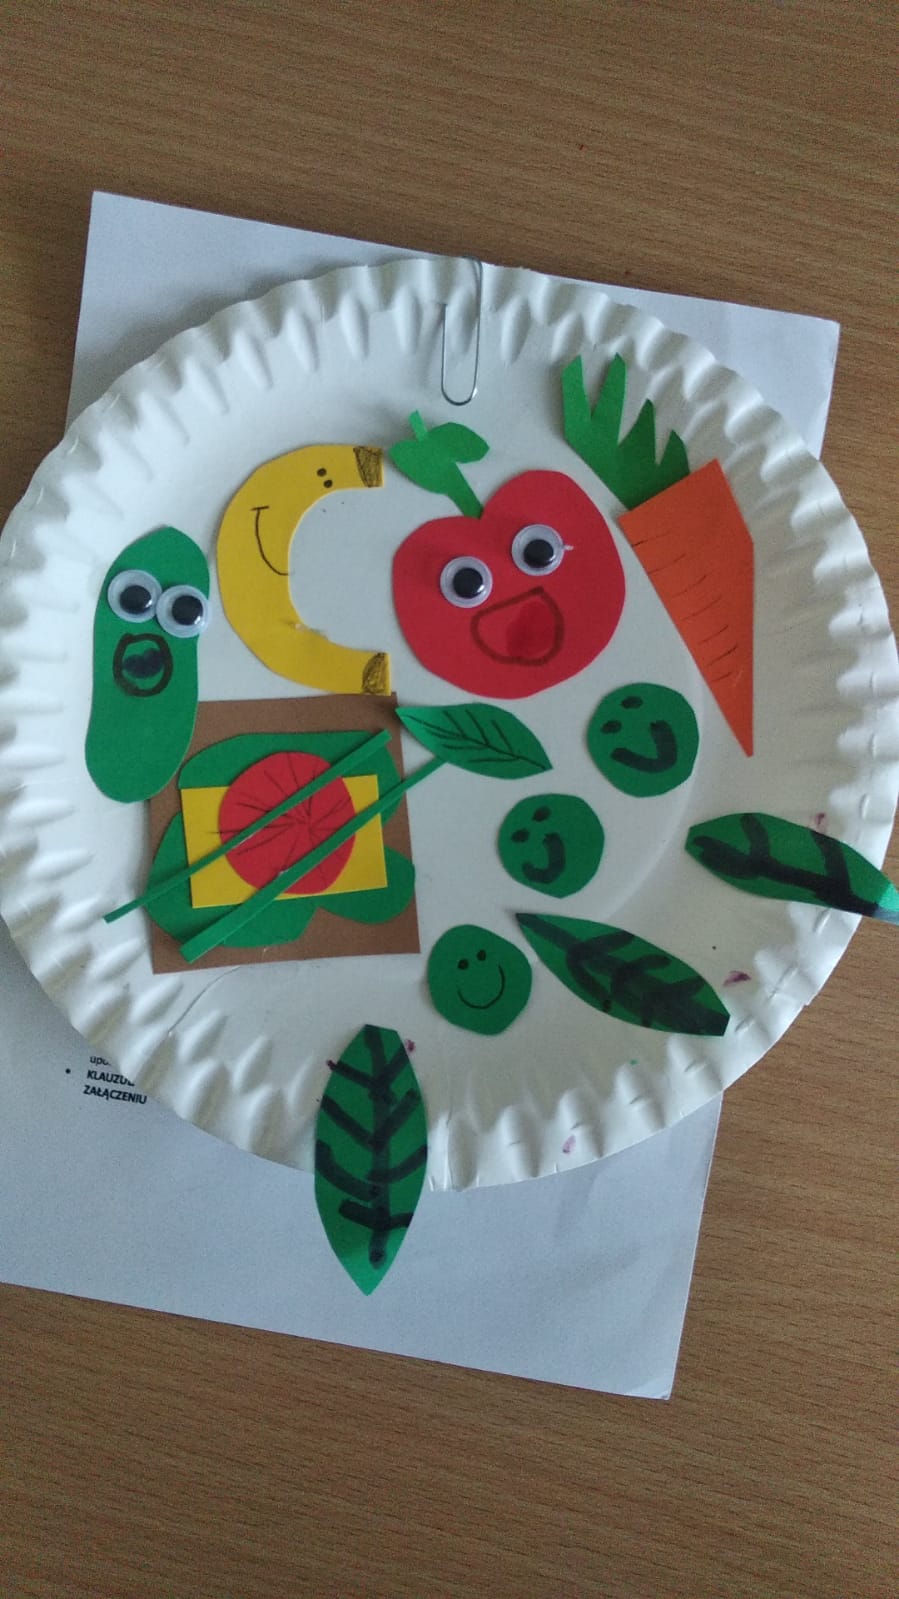 tekturowe talerzyki ozdobione rysunkami owoców i warzyw